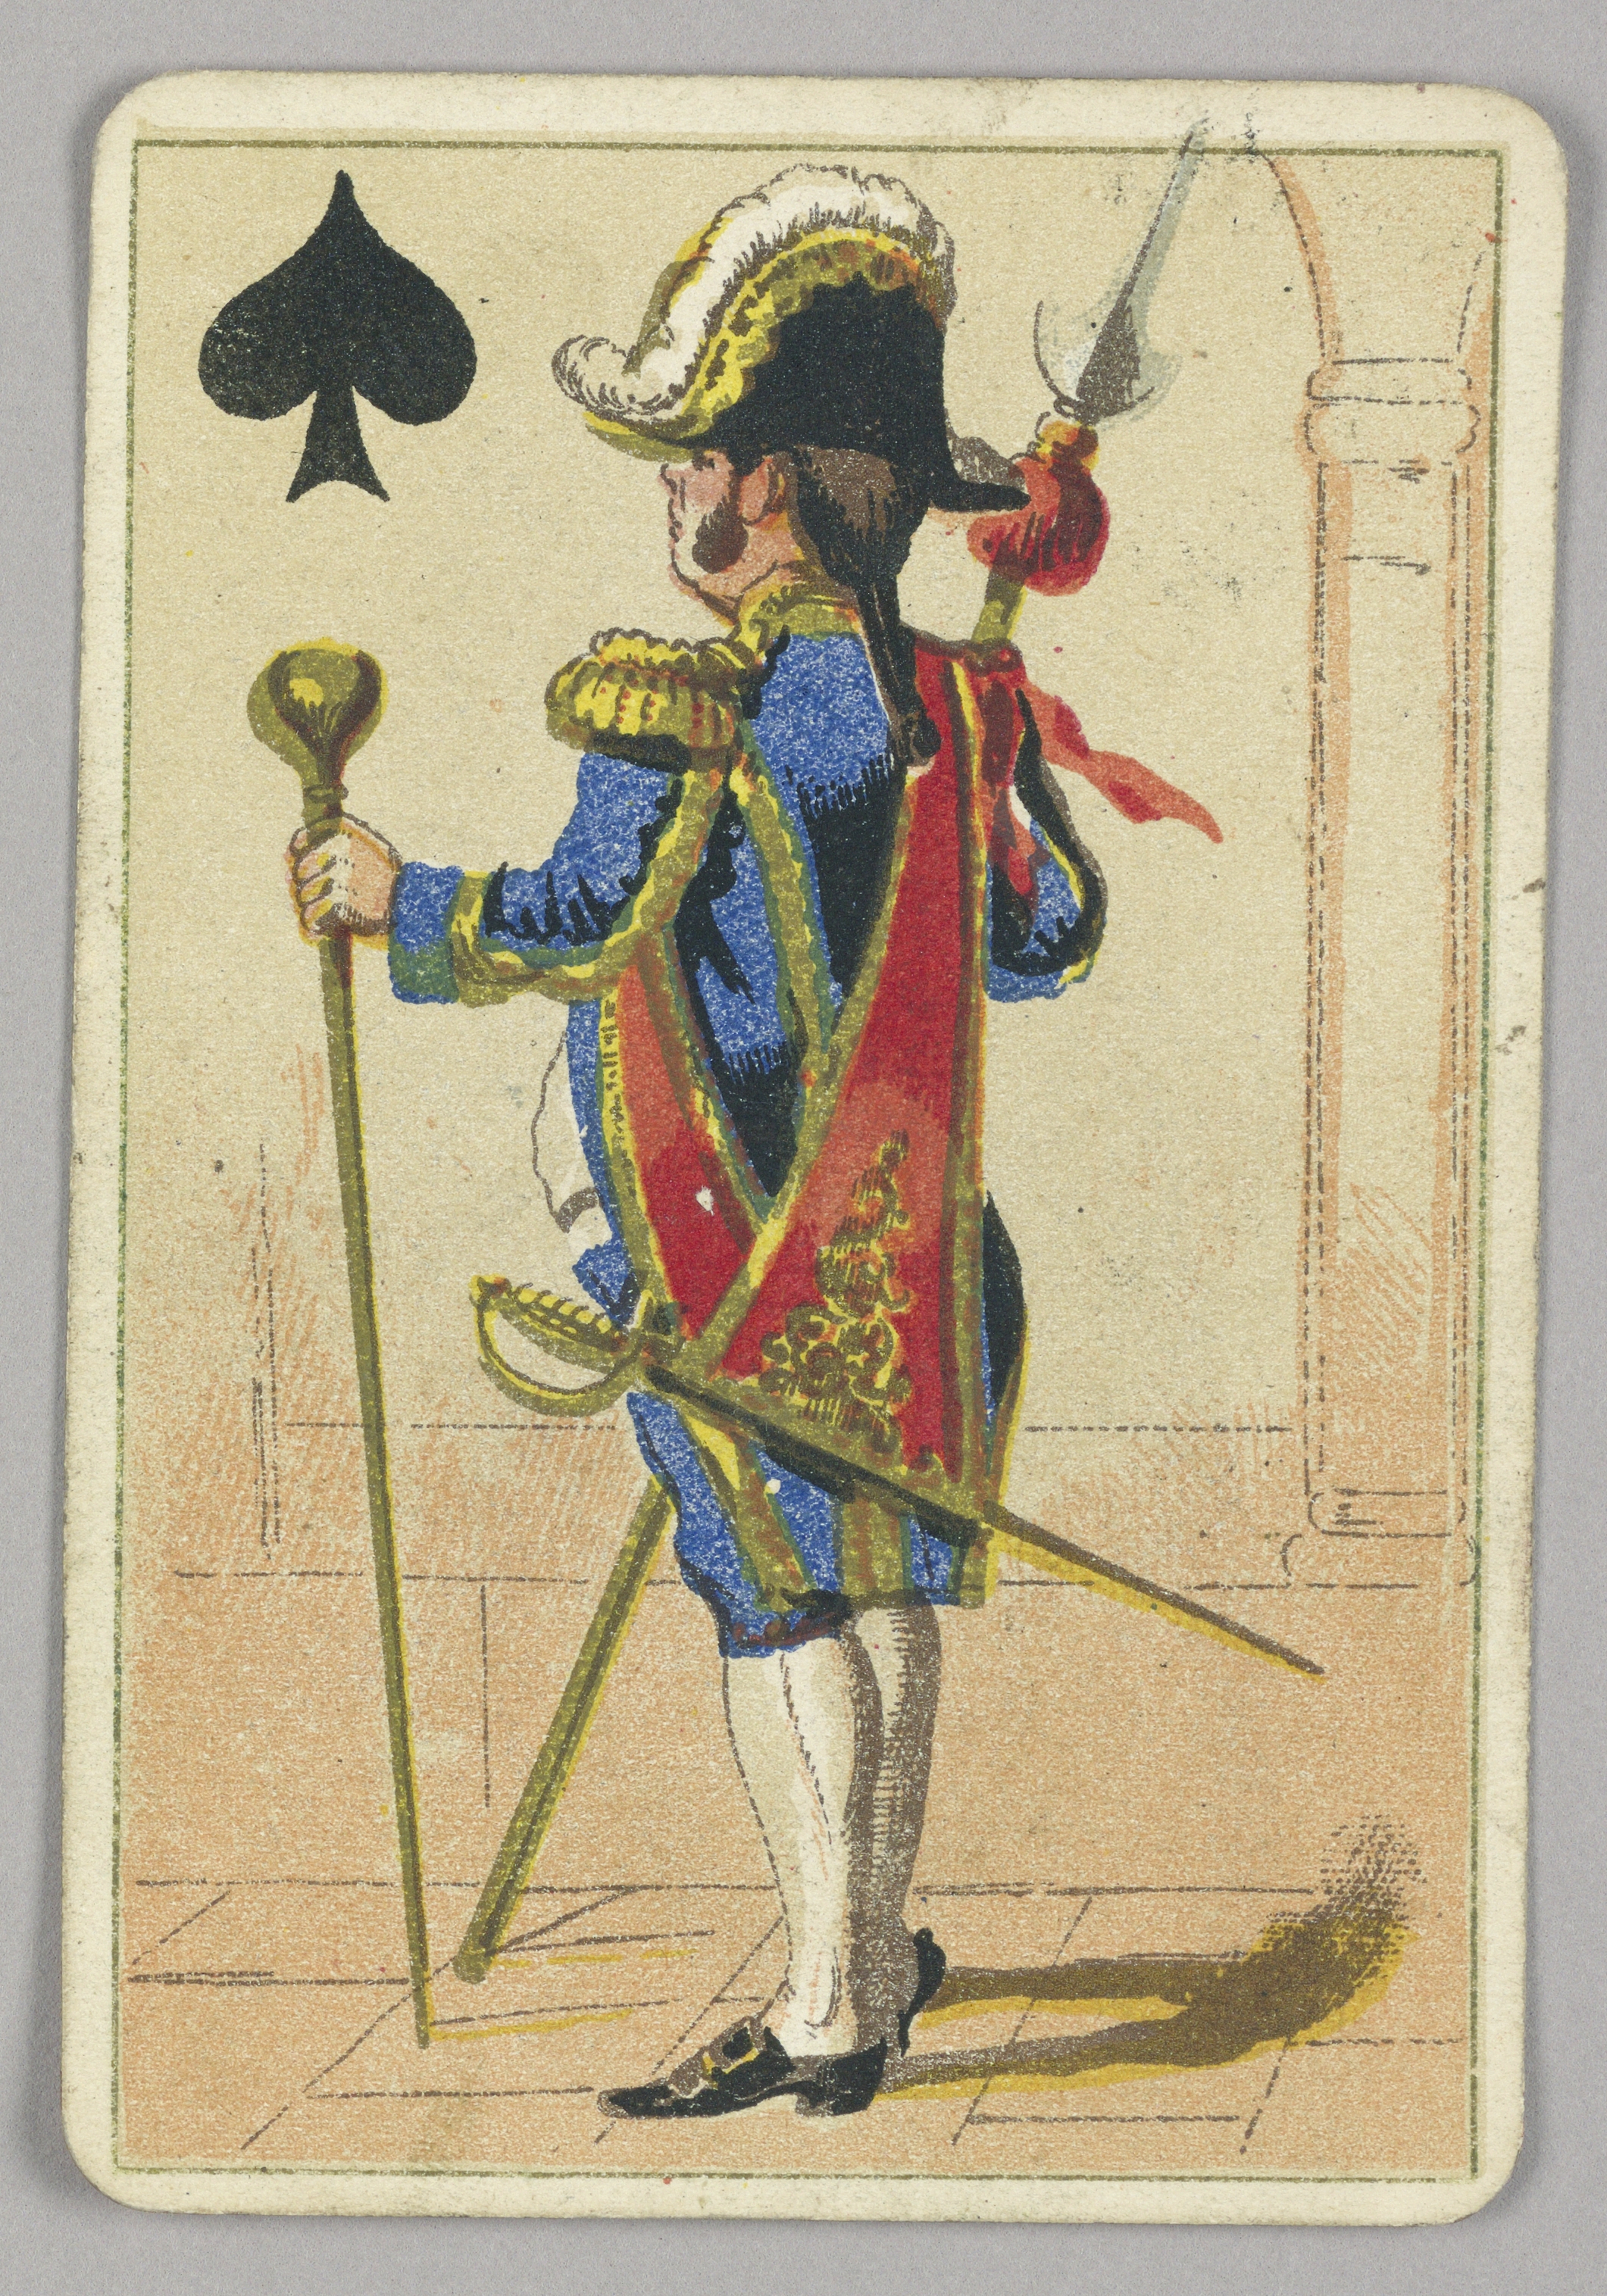 Jack (playing card) - Wikipedia